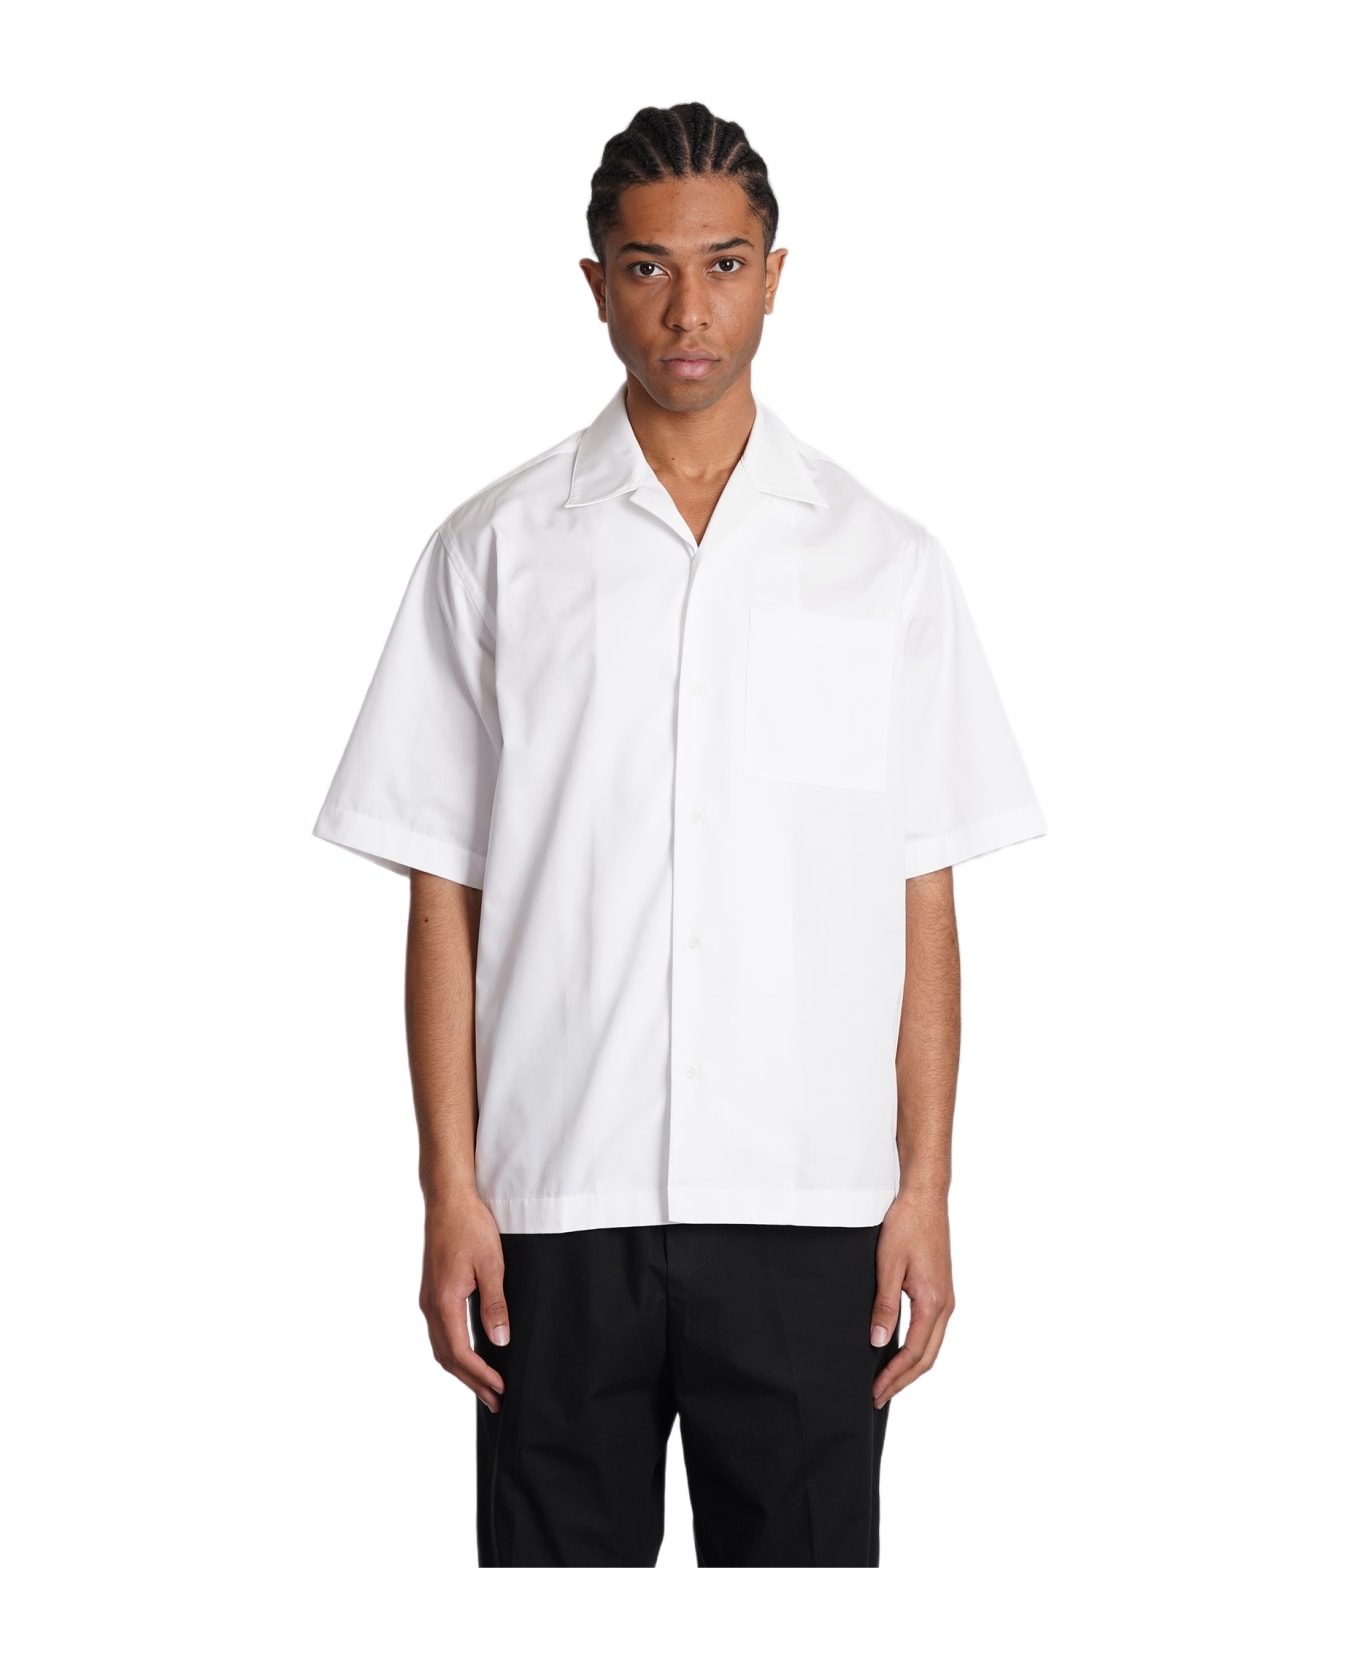 OAMC Shirt In White Polyester - white